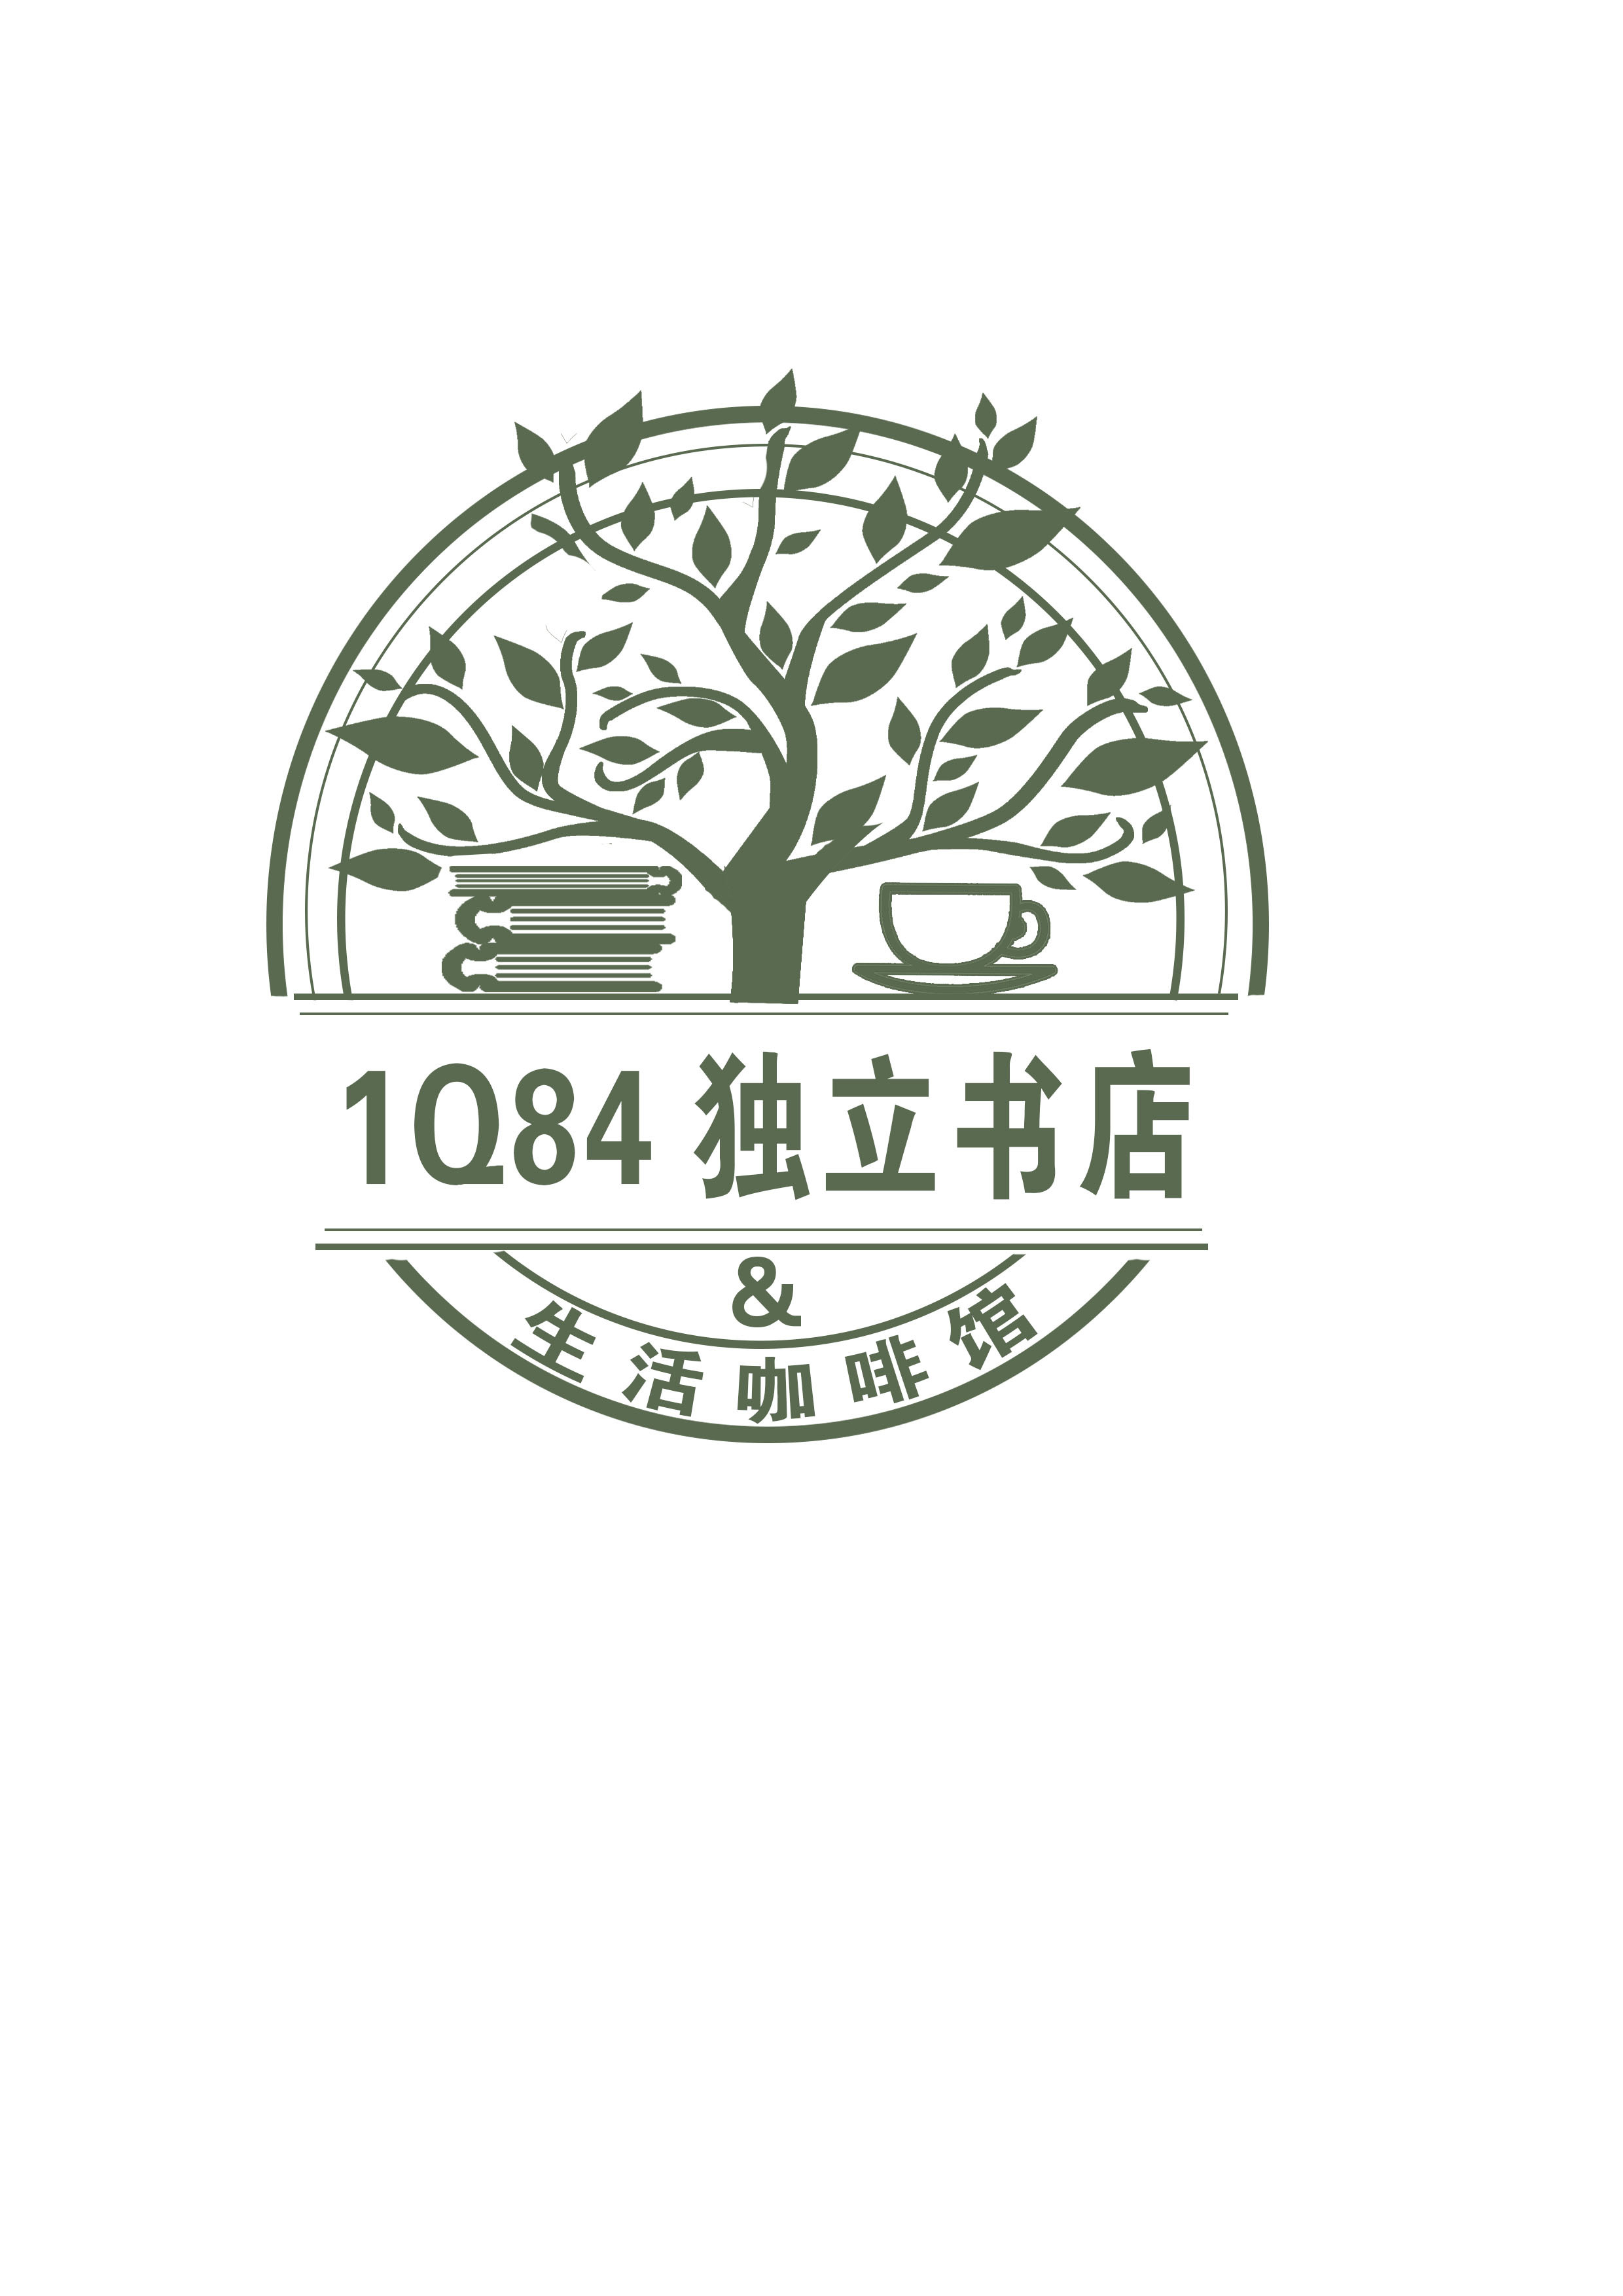 1q84独立书店&生活咖啡馆logo设计